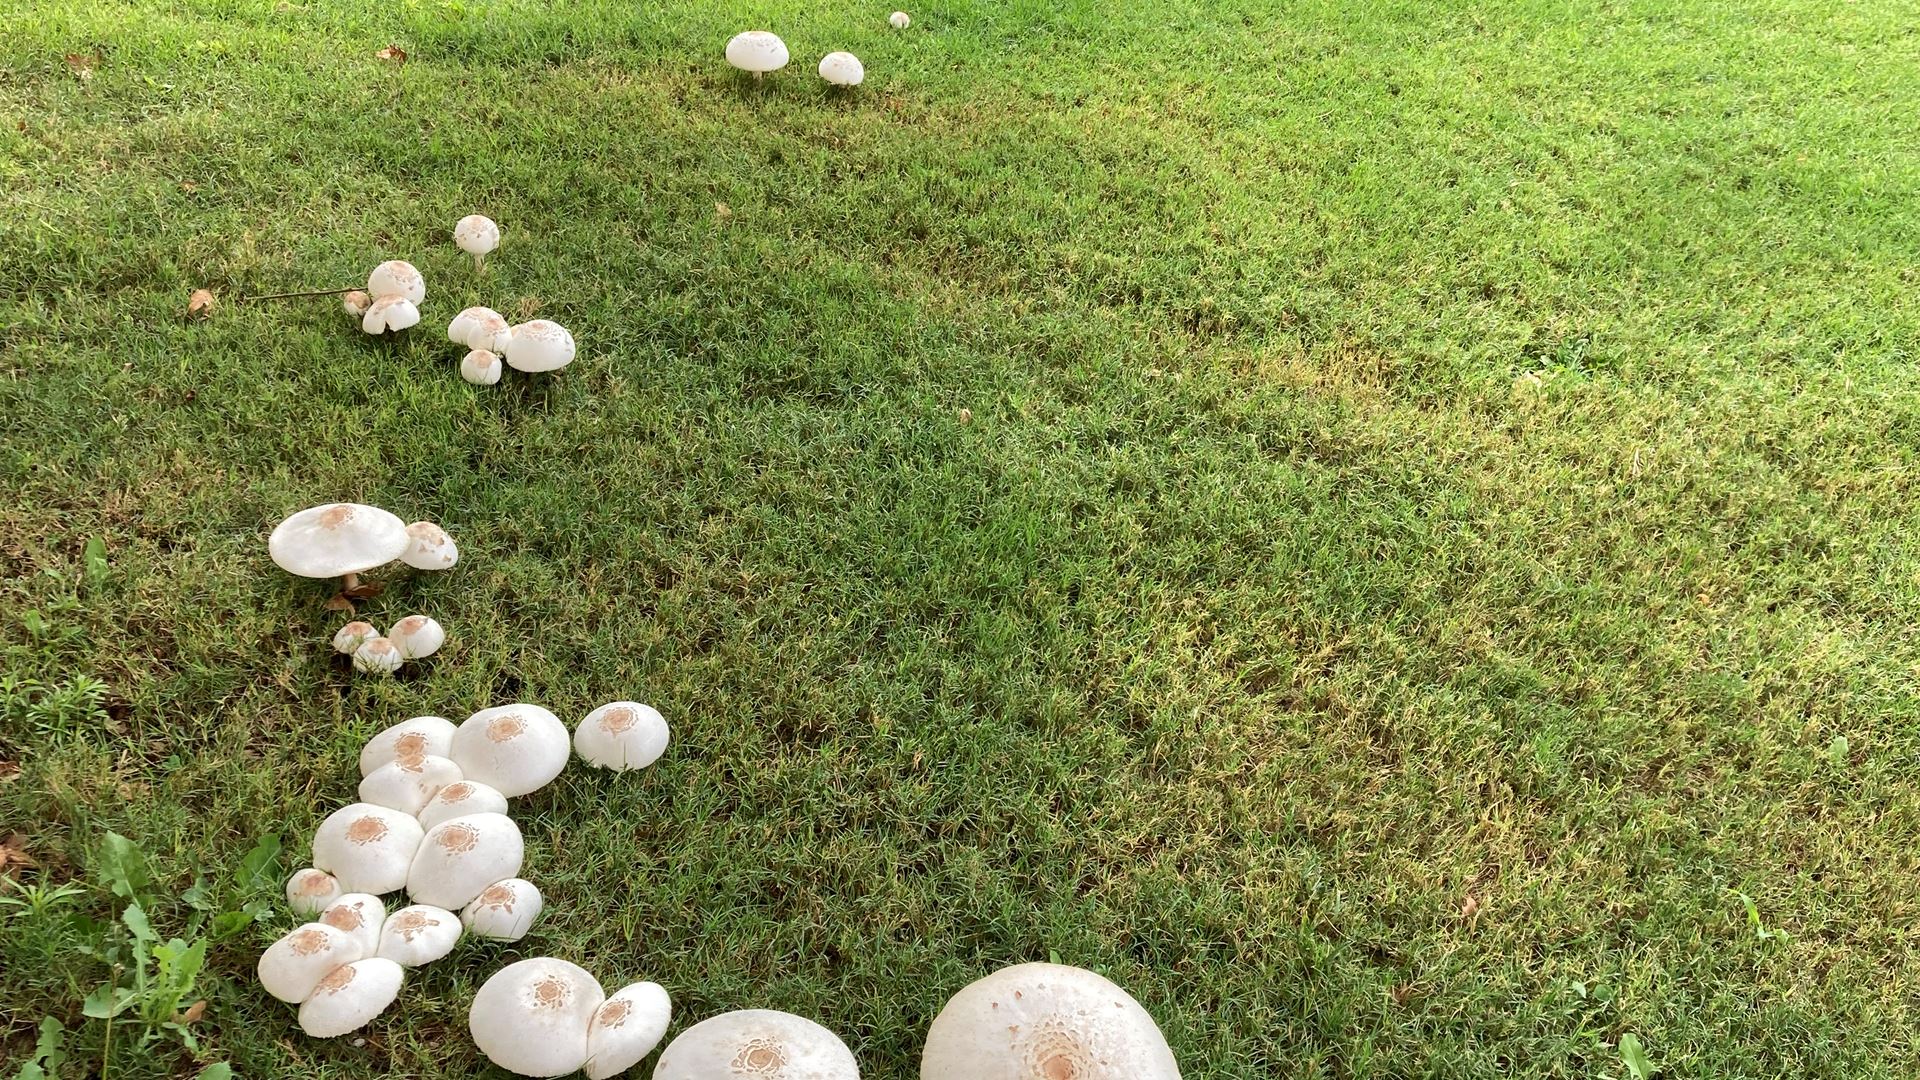 NMSU researcher warns against mushrooms growing in community